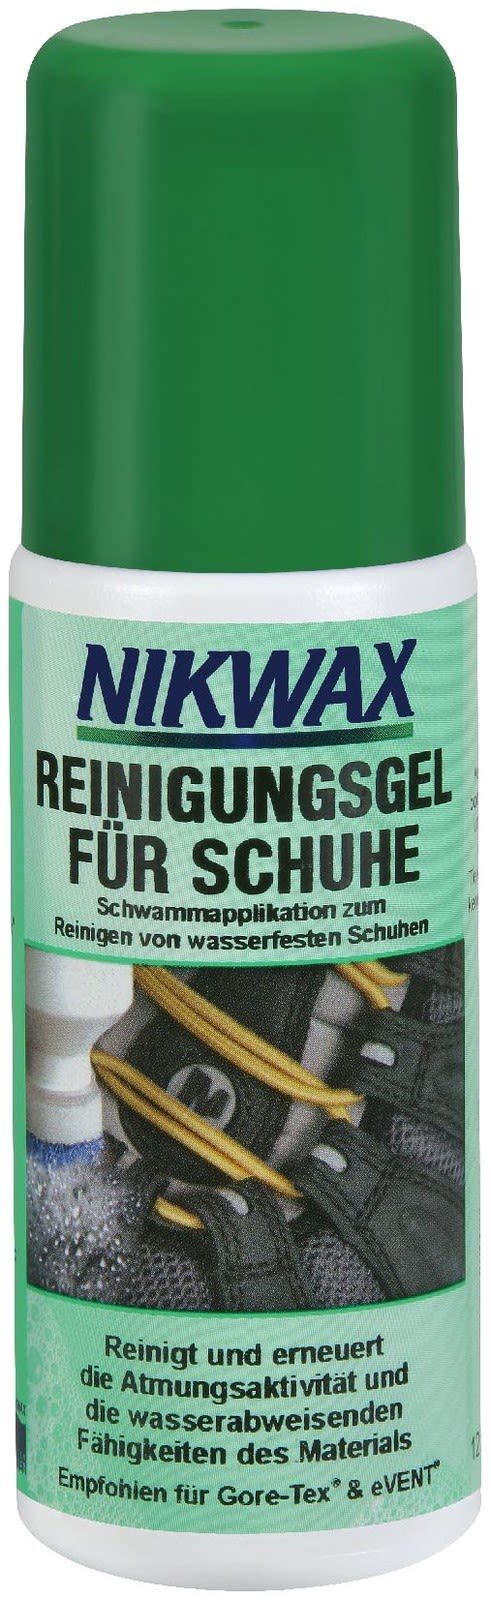 VAUDE Schuhputzbürste Vaude Nikwax Reinigungsgel Für Schuhe 125ml